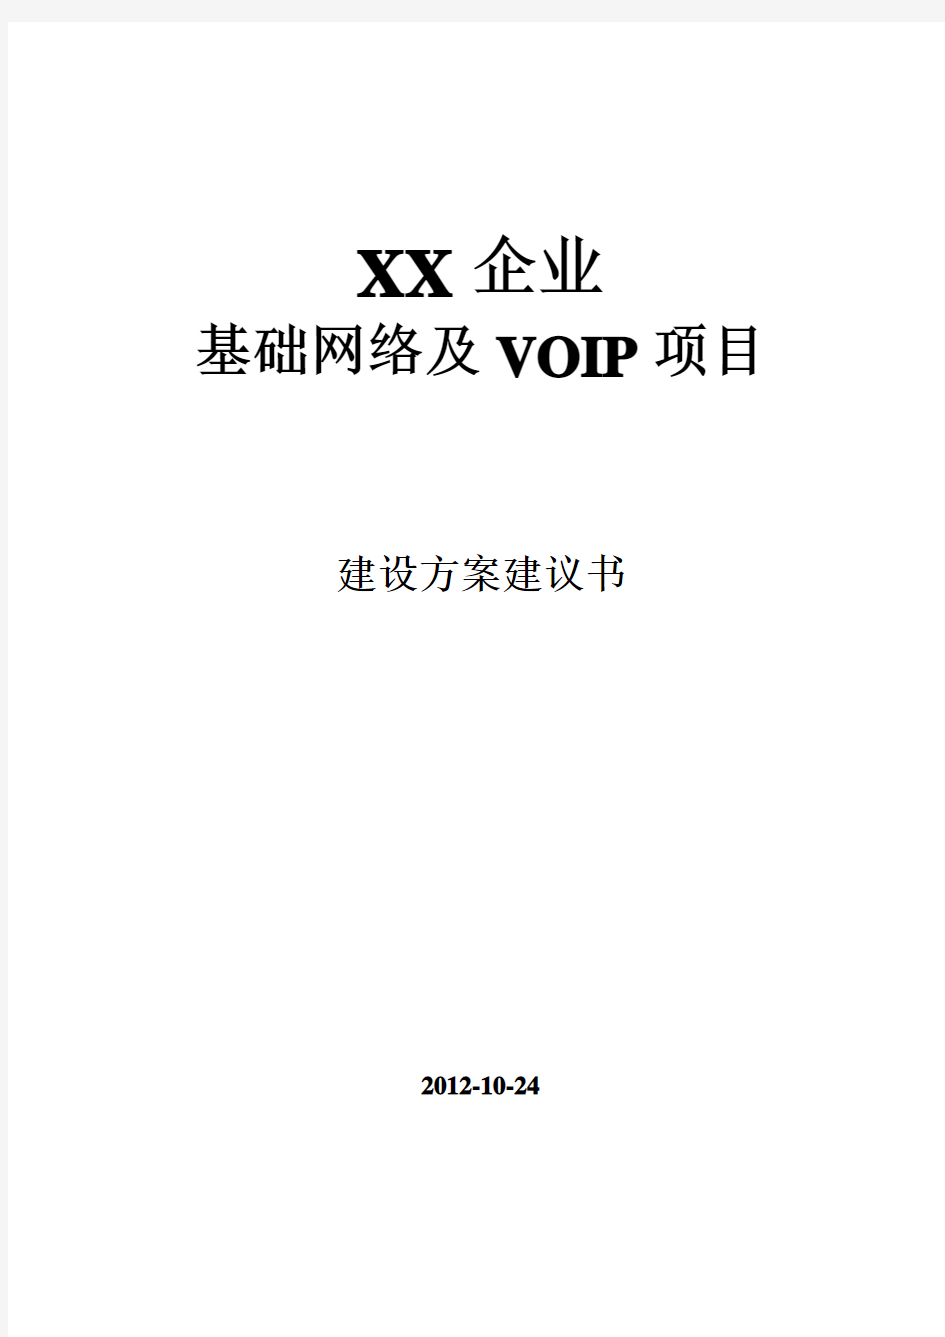 XX企业VOIP通信方案